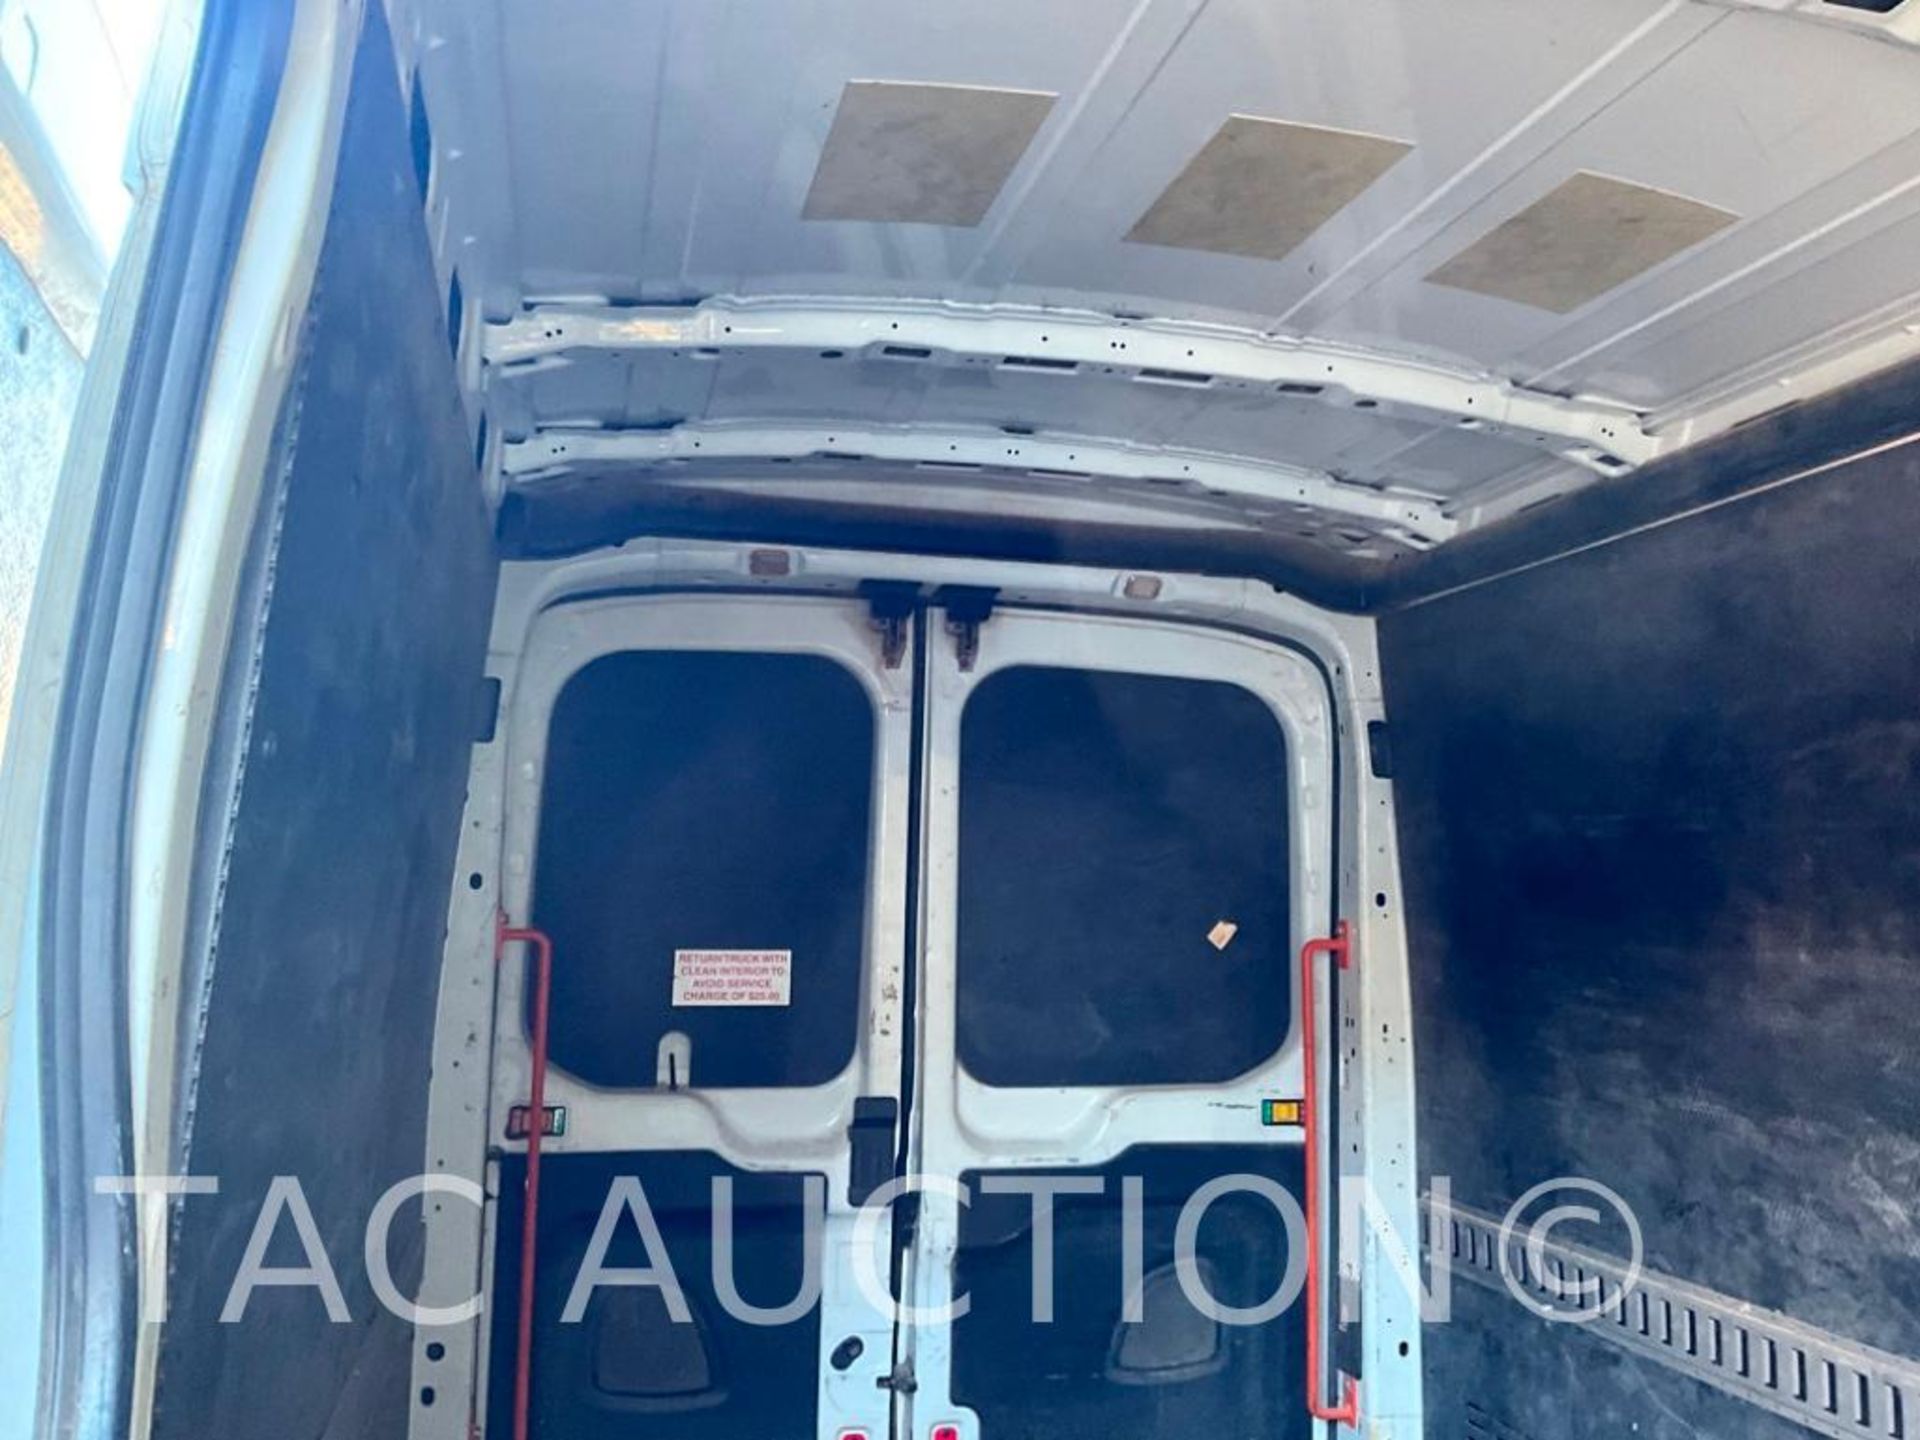 2019 Ford Transit 150 Cargo Van - Image 34 of 53